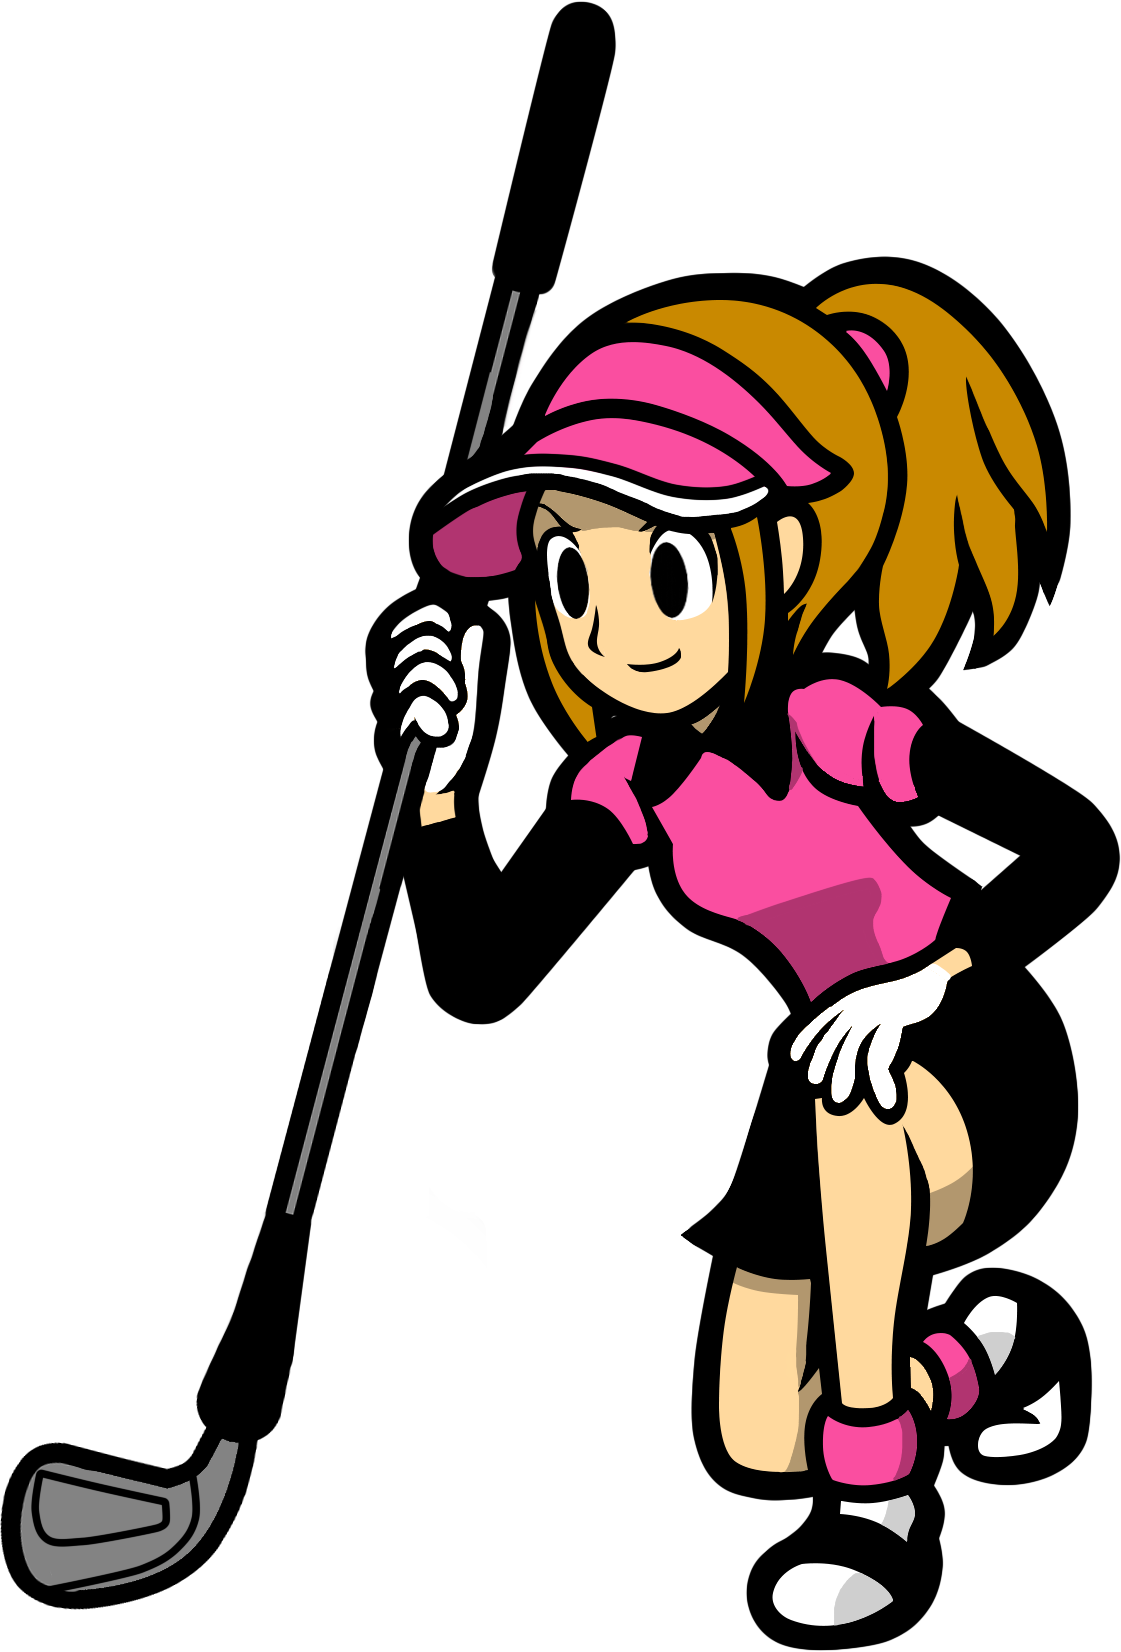 Female Golfer Wii - Rhythm Heaven Female Golfer (1121x1652)